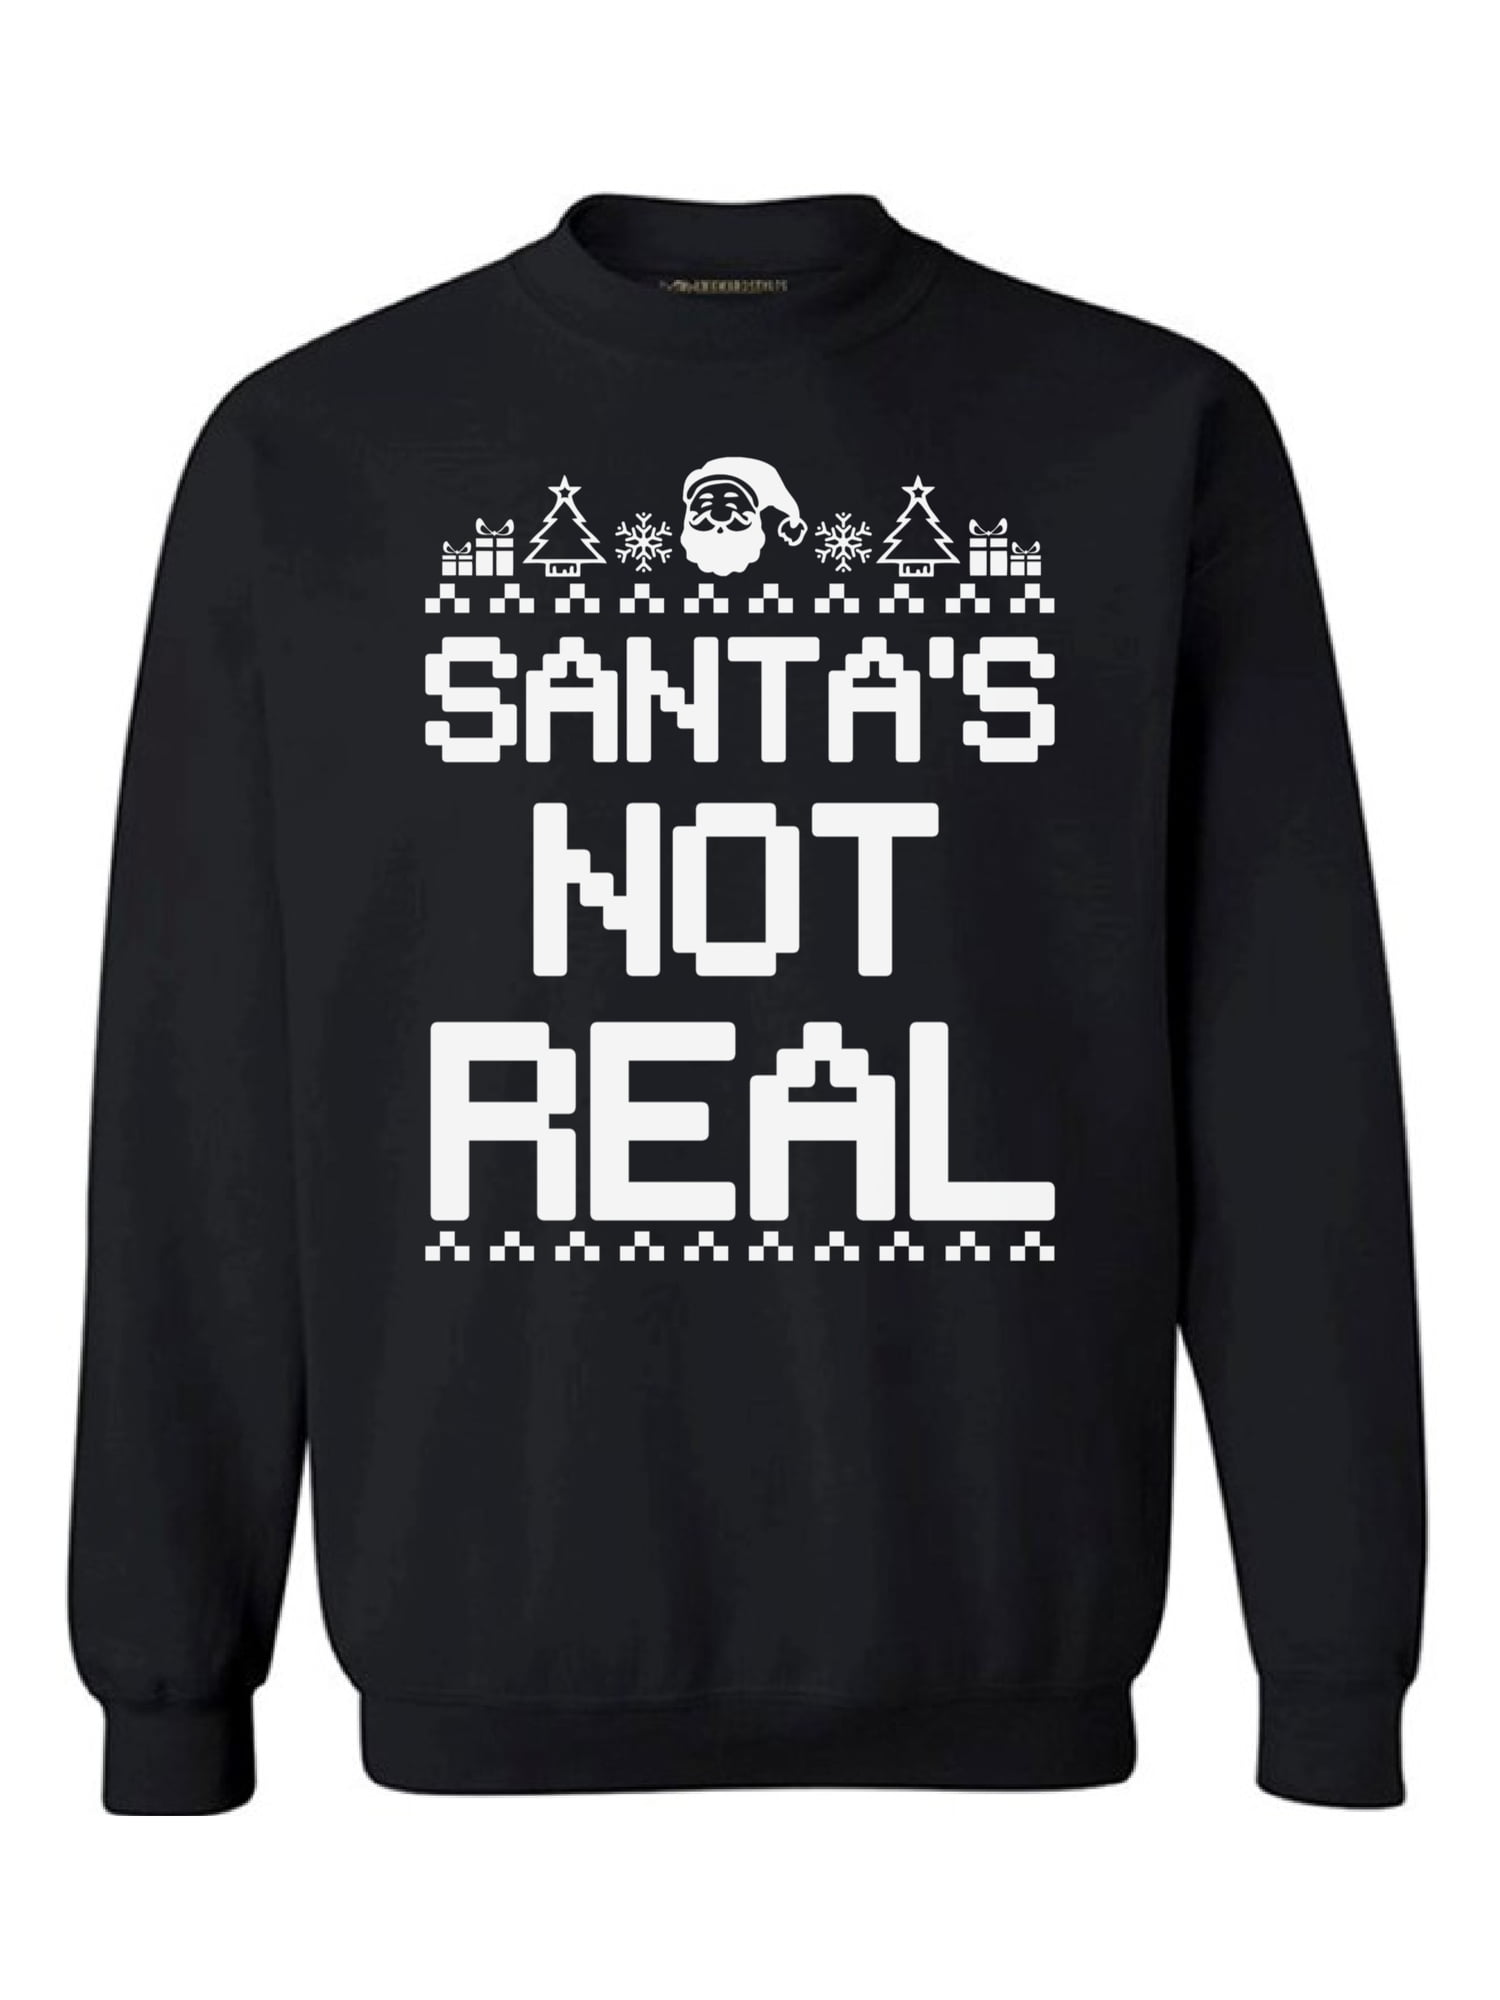 Santa's Not Real!! Funny Christmas Sweatshirt Xmas Jumper Top Christmas Gift 